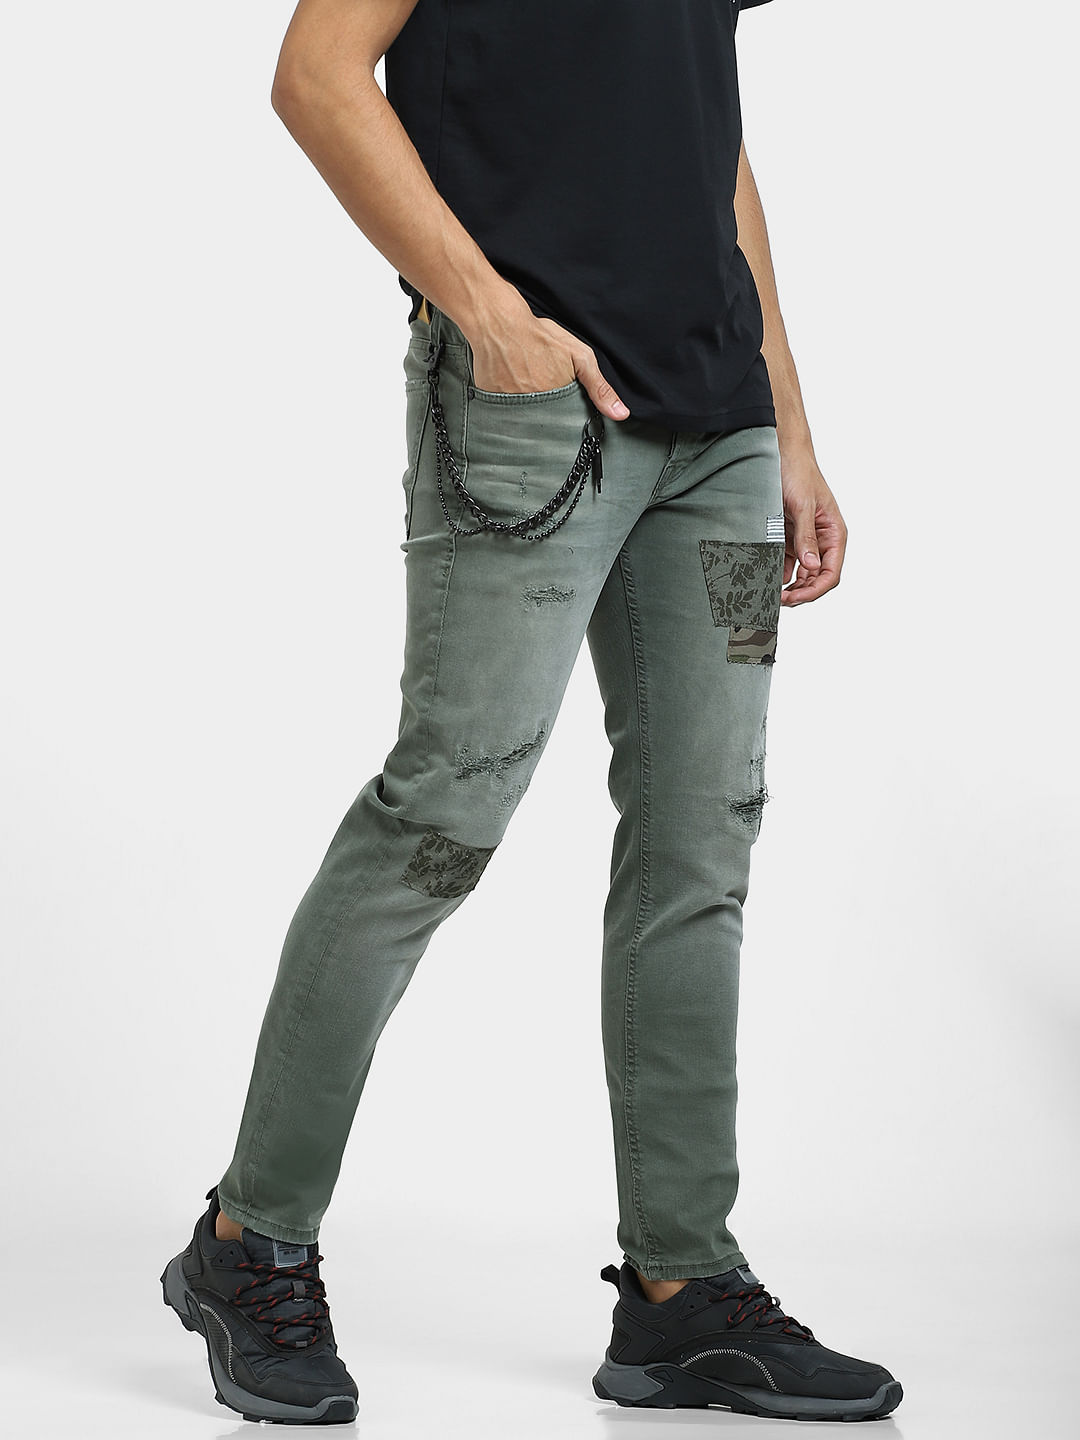 Rewash Juniors Ripped Skinny Ankle Jeans Olive Green 9 Affordable Designer  Brands | Affordable Designer Brands